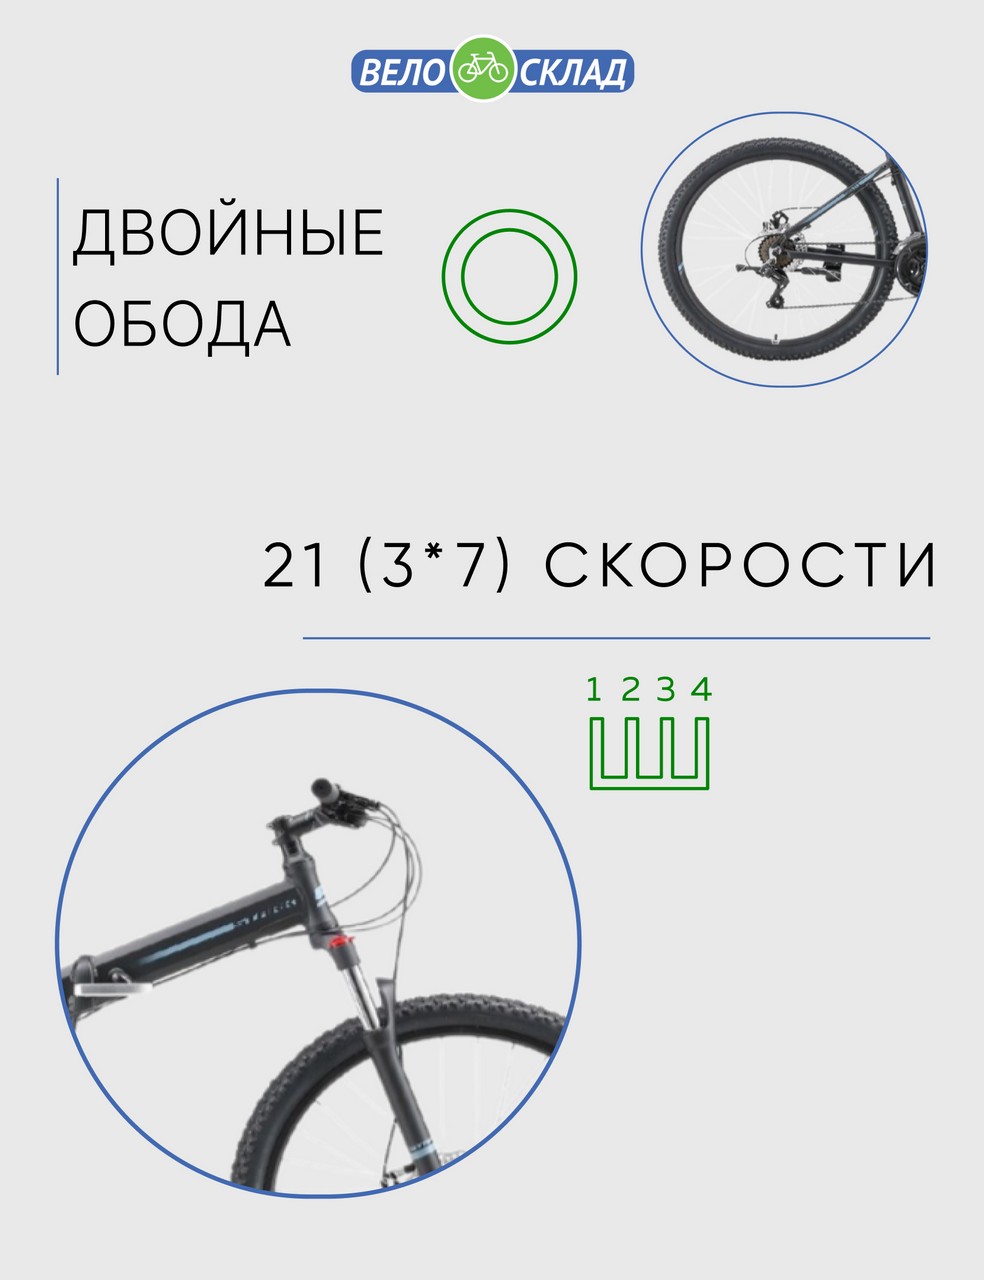 Складной велосипед Stark Cobra 27.2 D, год 2023, цвет Черный-Серебристый, ростовка 18